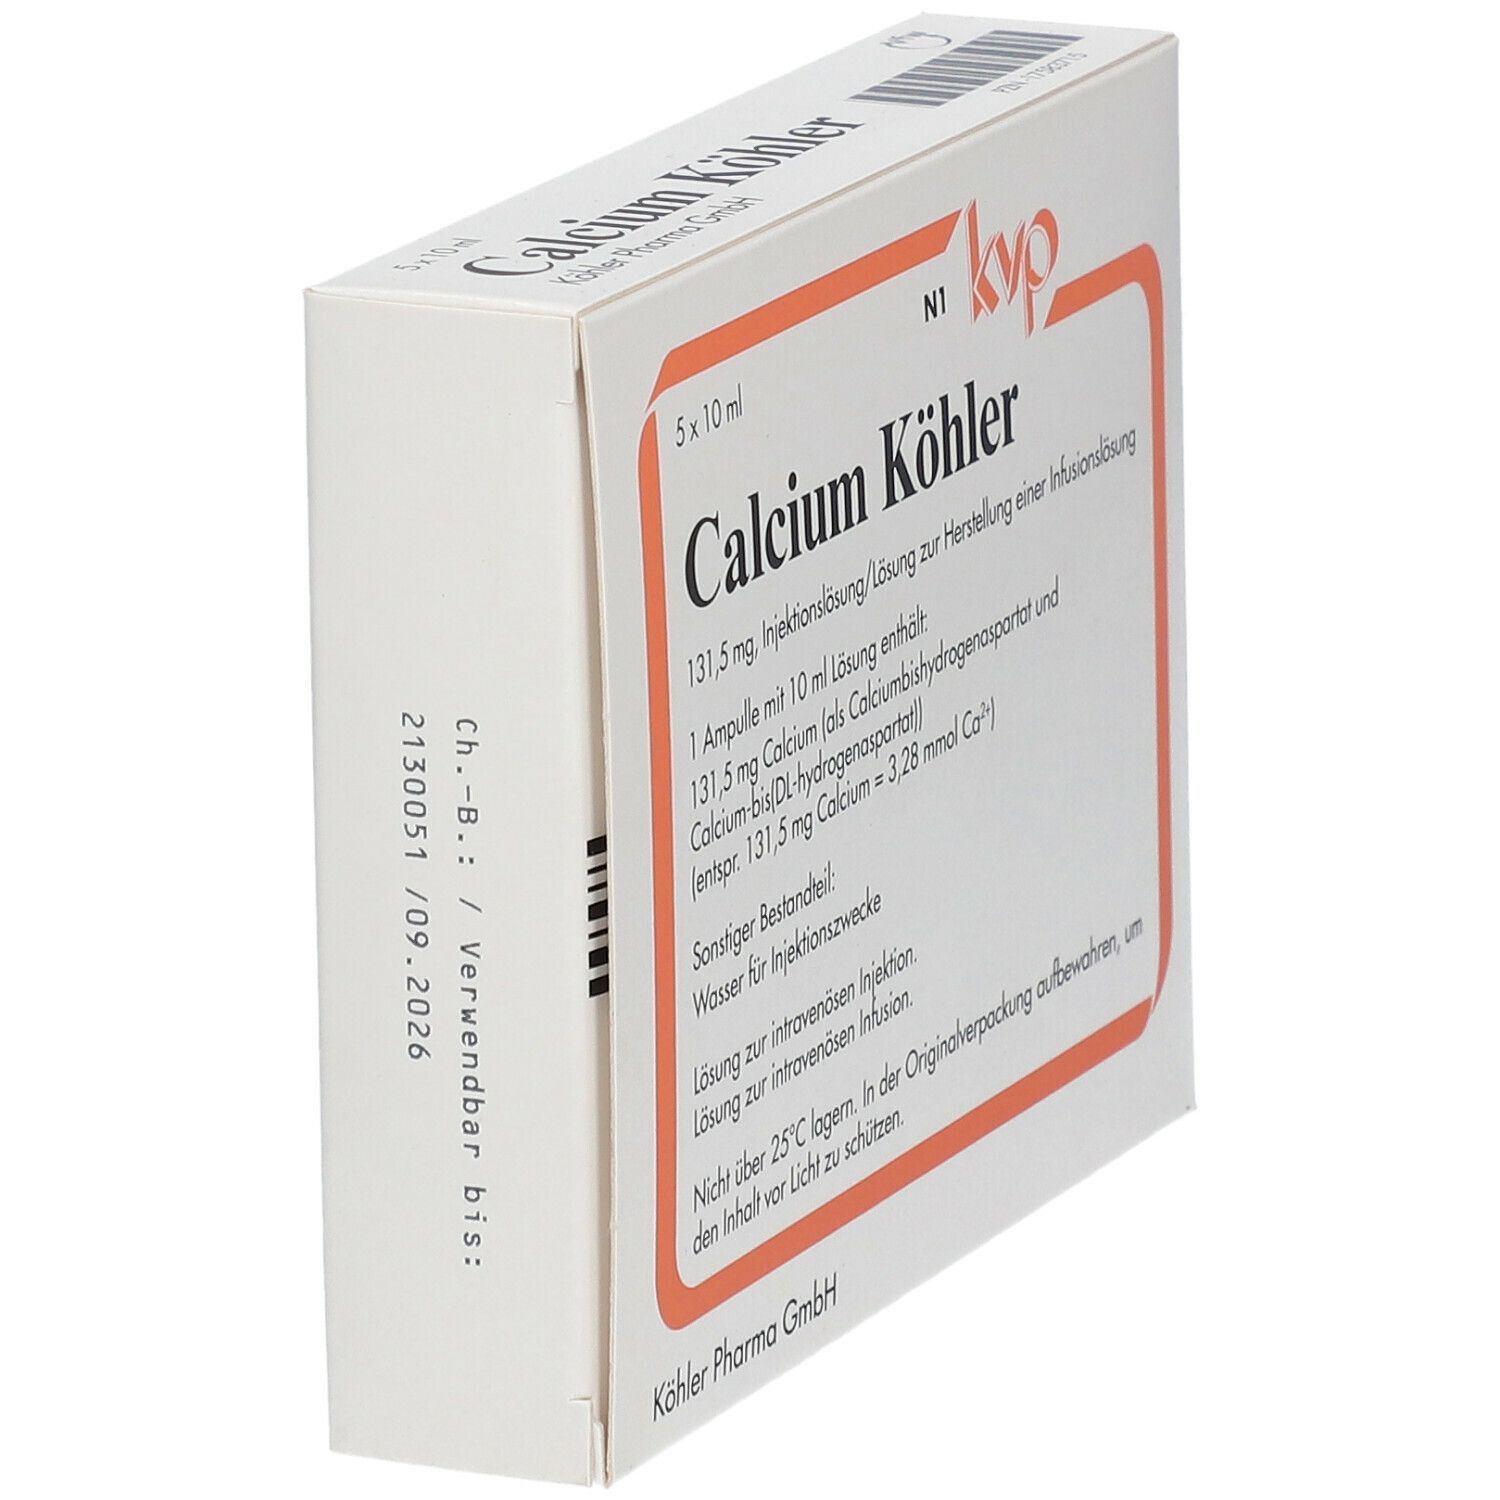 Calcium Köhler, 131,5 mg